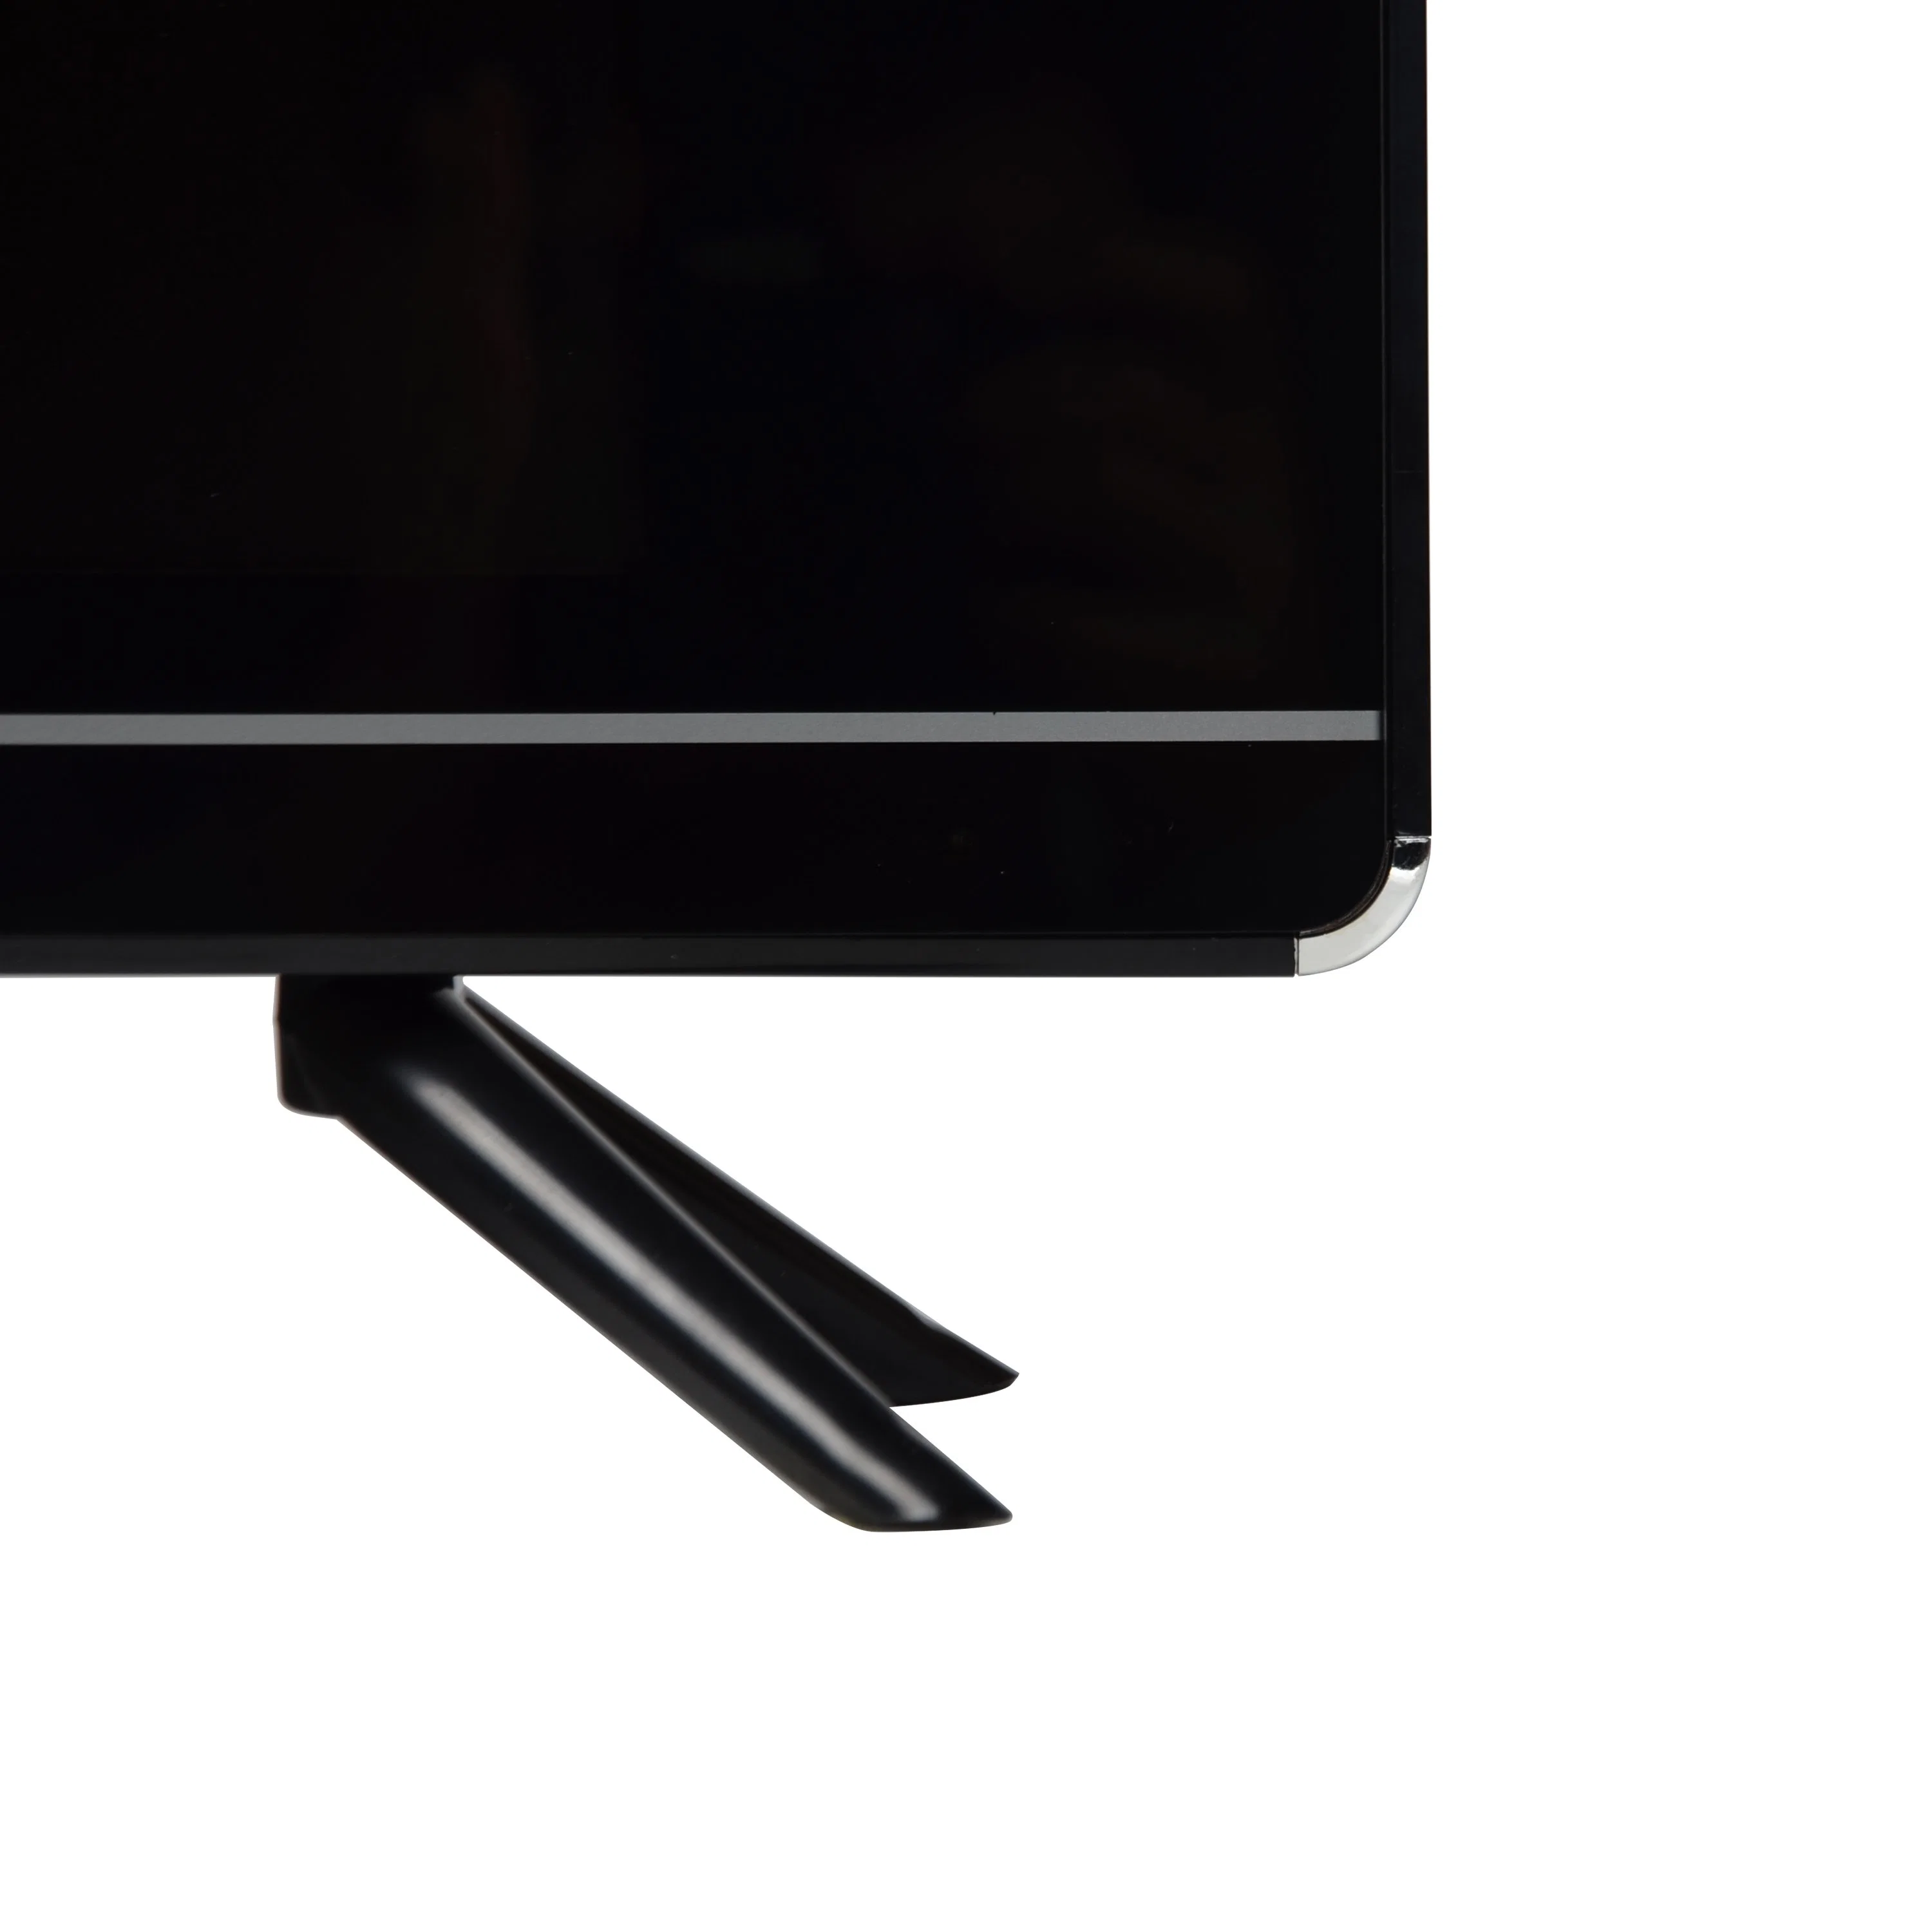 Prix de gros de 22 pouces écran 1080p TV LED Gaming calculatrice Écran LCD moniteur TV